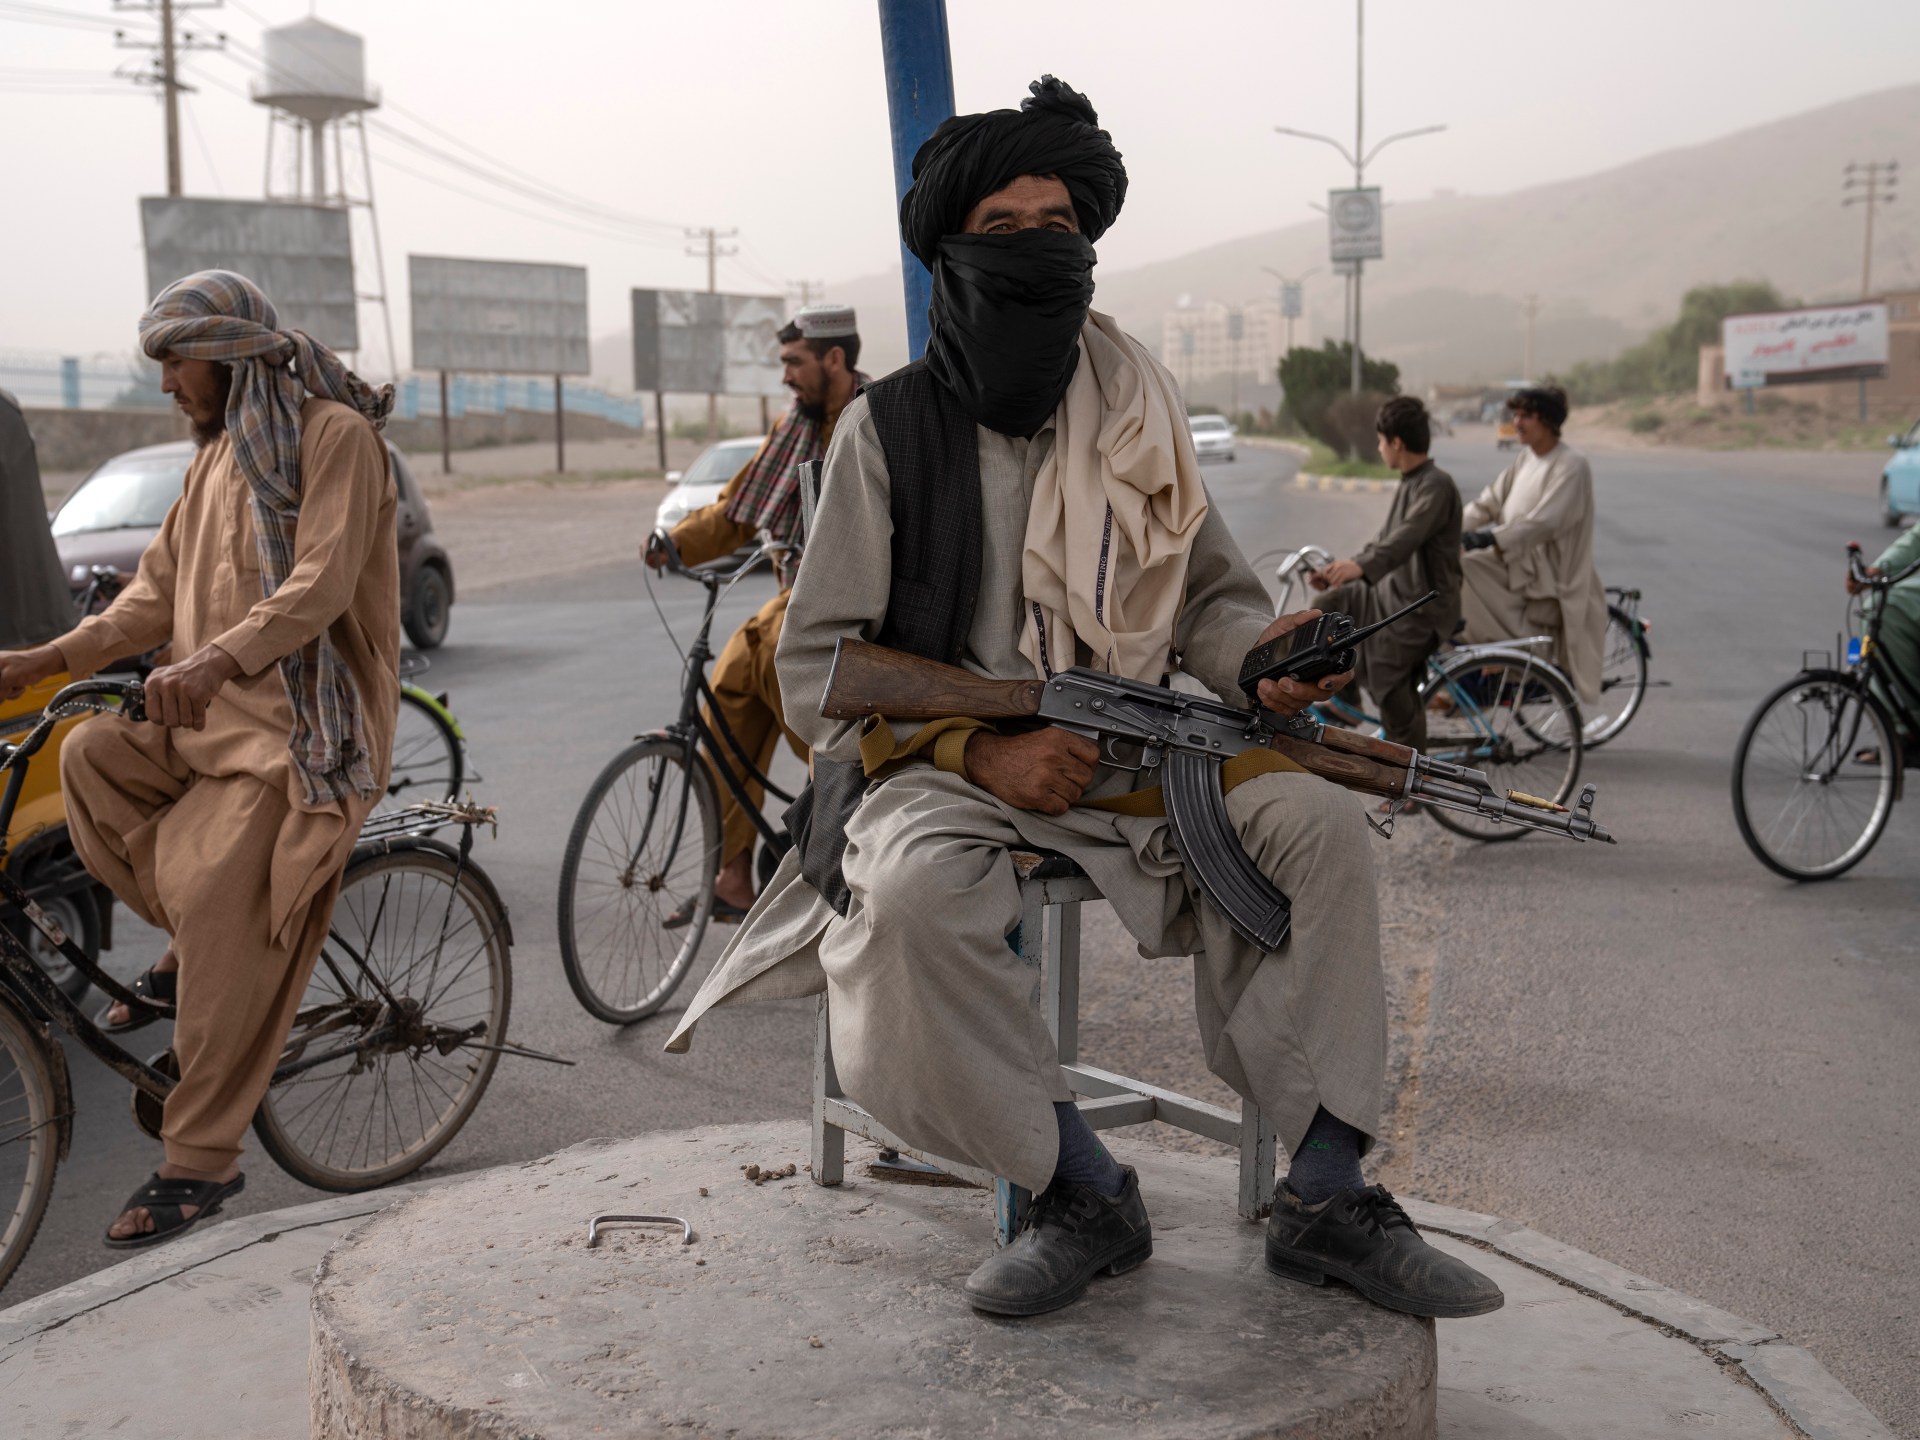 Lebih dari 1.000 warga sipil Afghanistan tewas sejak pengambilalihan Taliban: PBB |  Berita Taliban